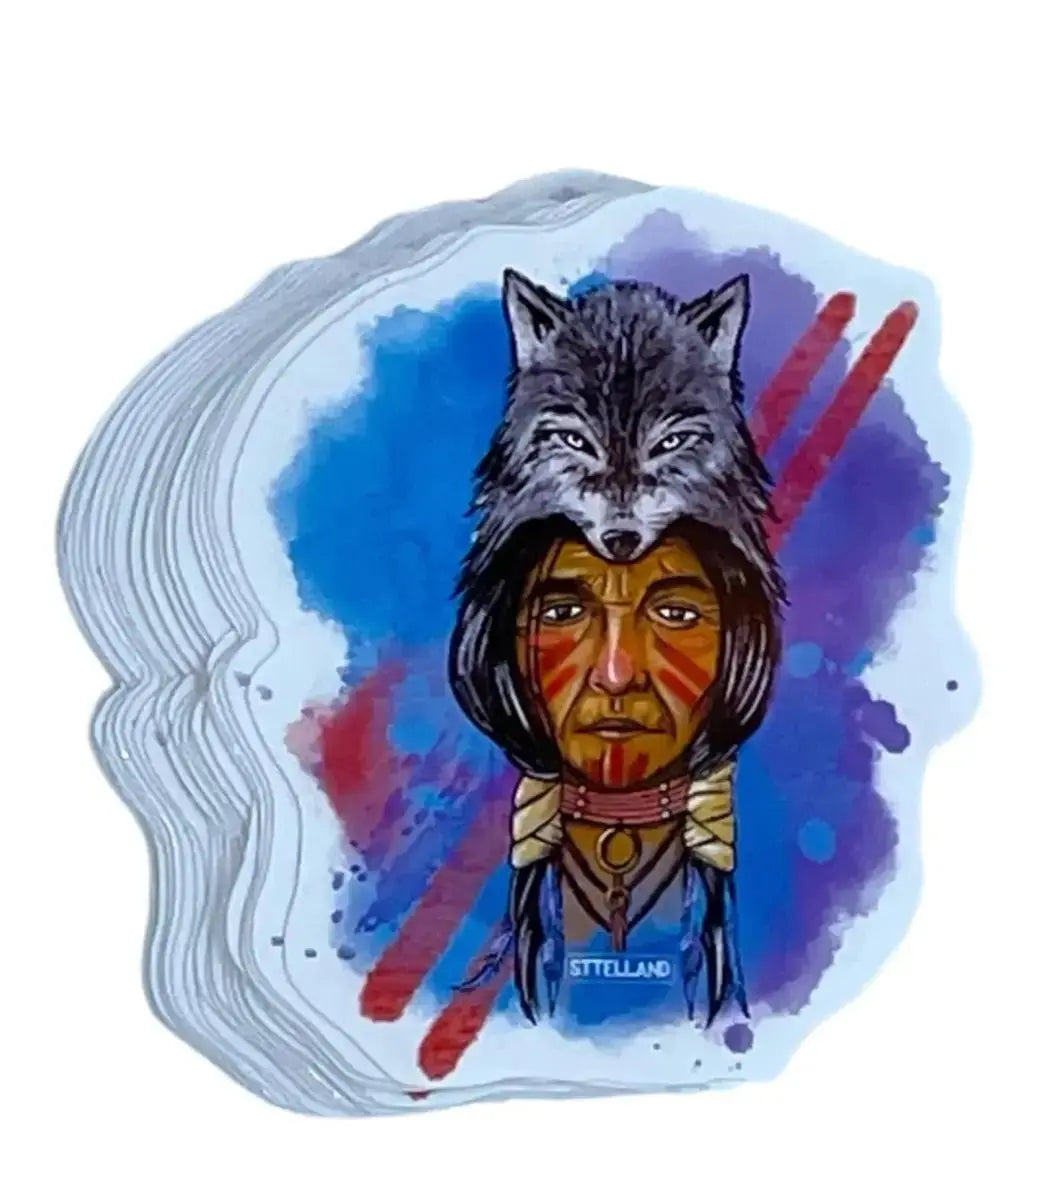 Wolf Stickers / glossy vinyl stickers - Digital Art, Illustration Sttelland Boutique